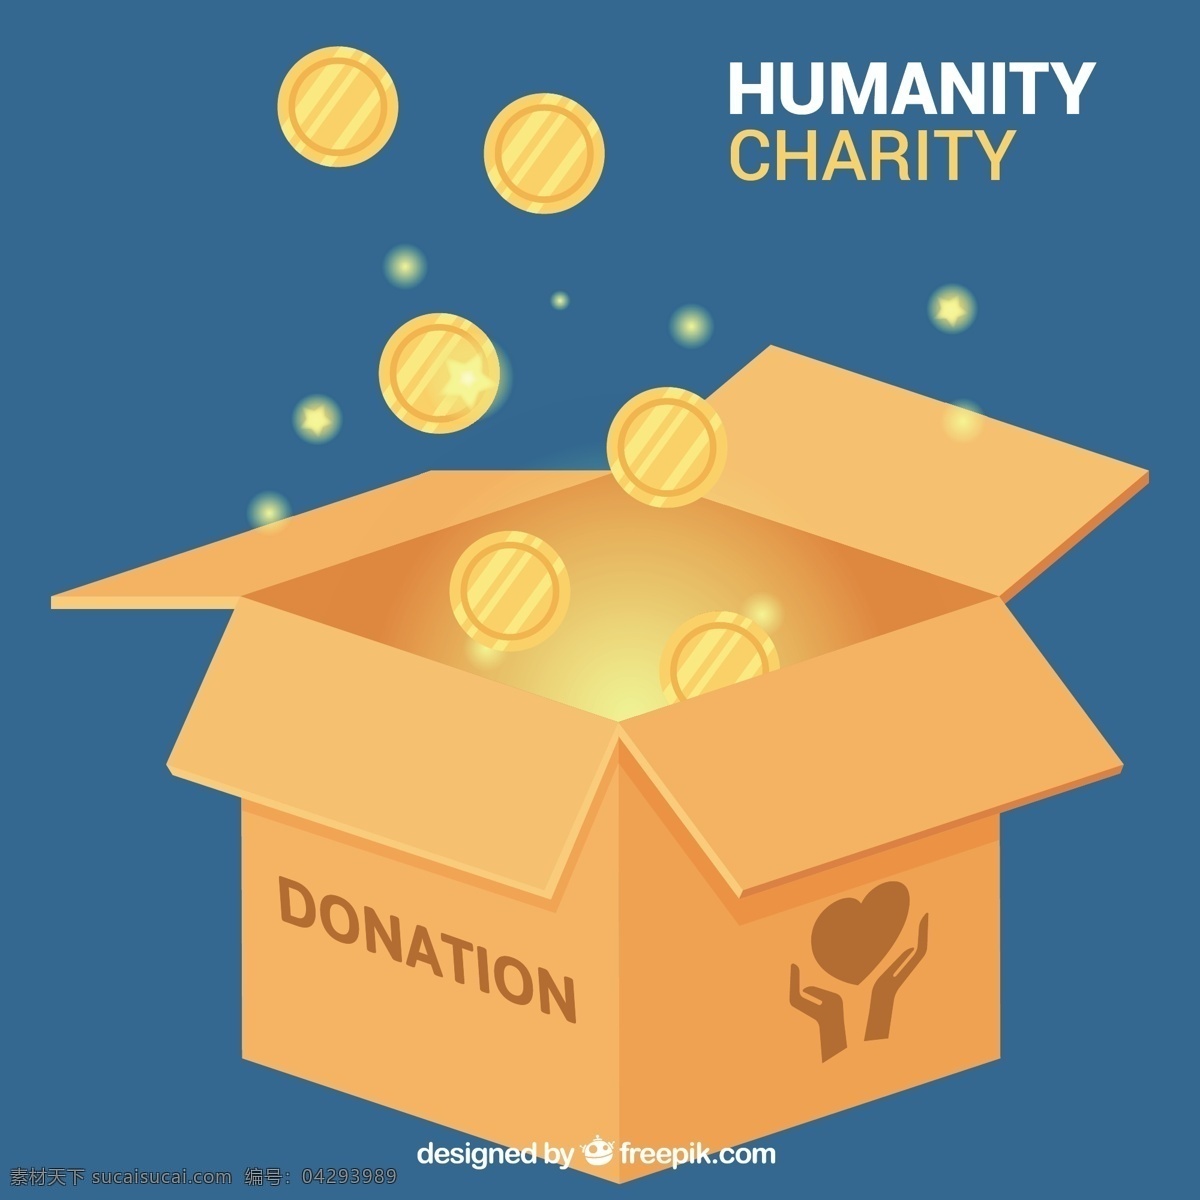 硬币捐赠箱 人 金钱 盒子 医疗 世界 社会 帮助 生活 支持 社区 硬币 慈善 关心 组织 希望 捐赠 给予 分享